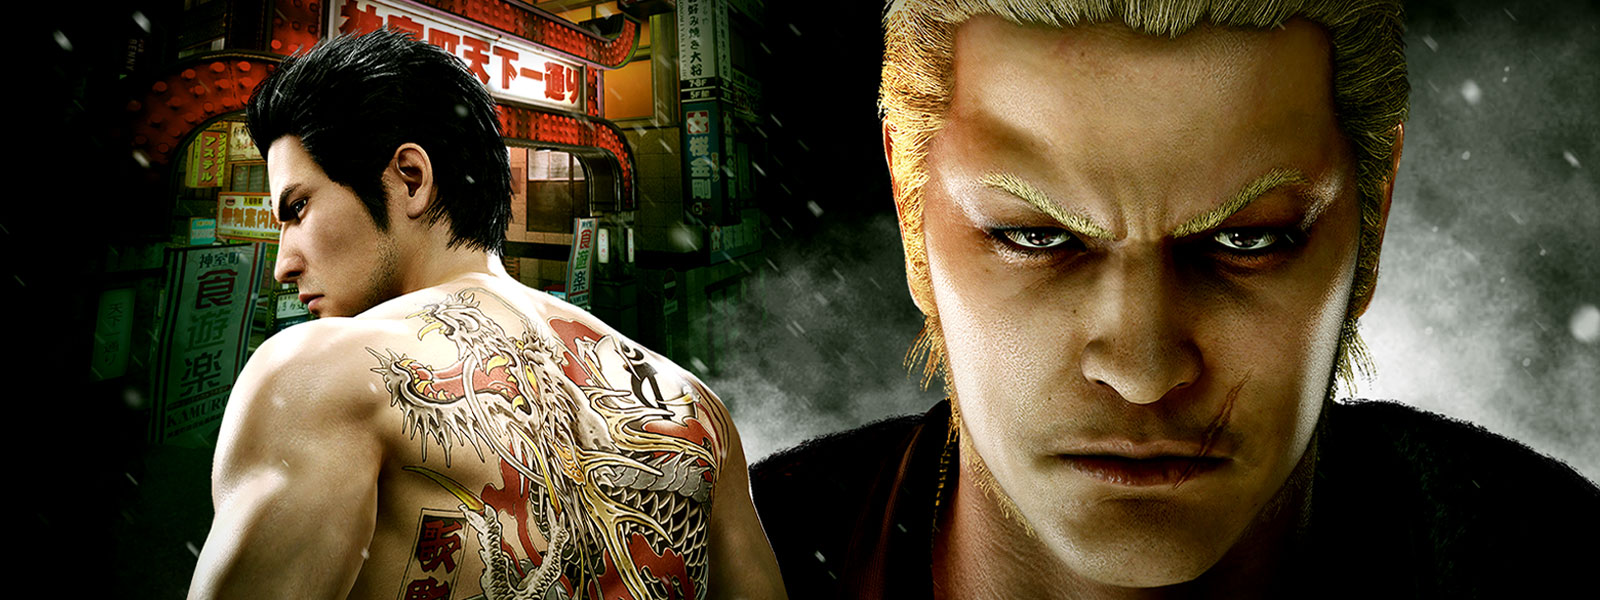 Dos personajes de Yakuza se presentan en un ambiente crudo de una ciudad nocturna.